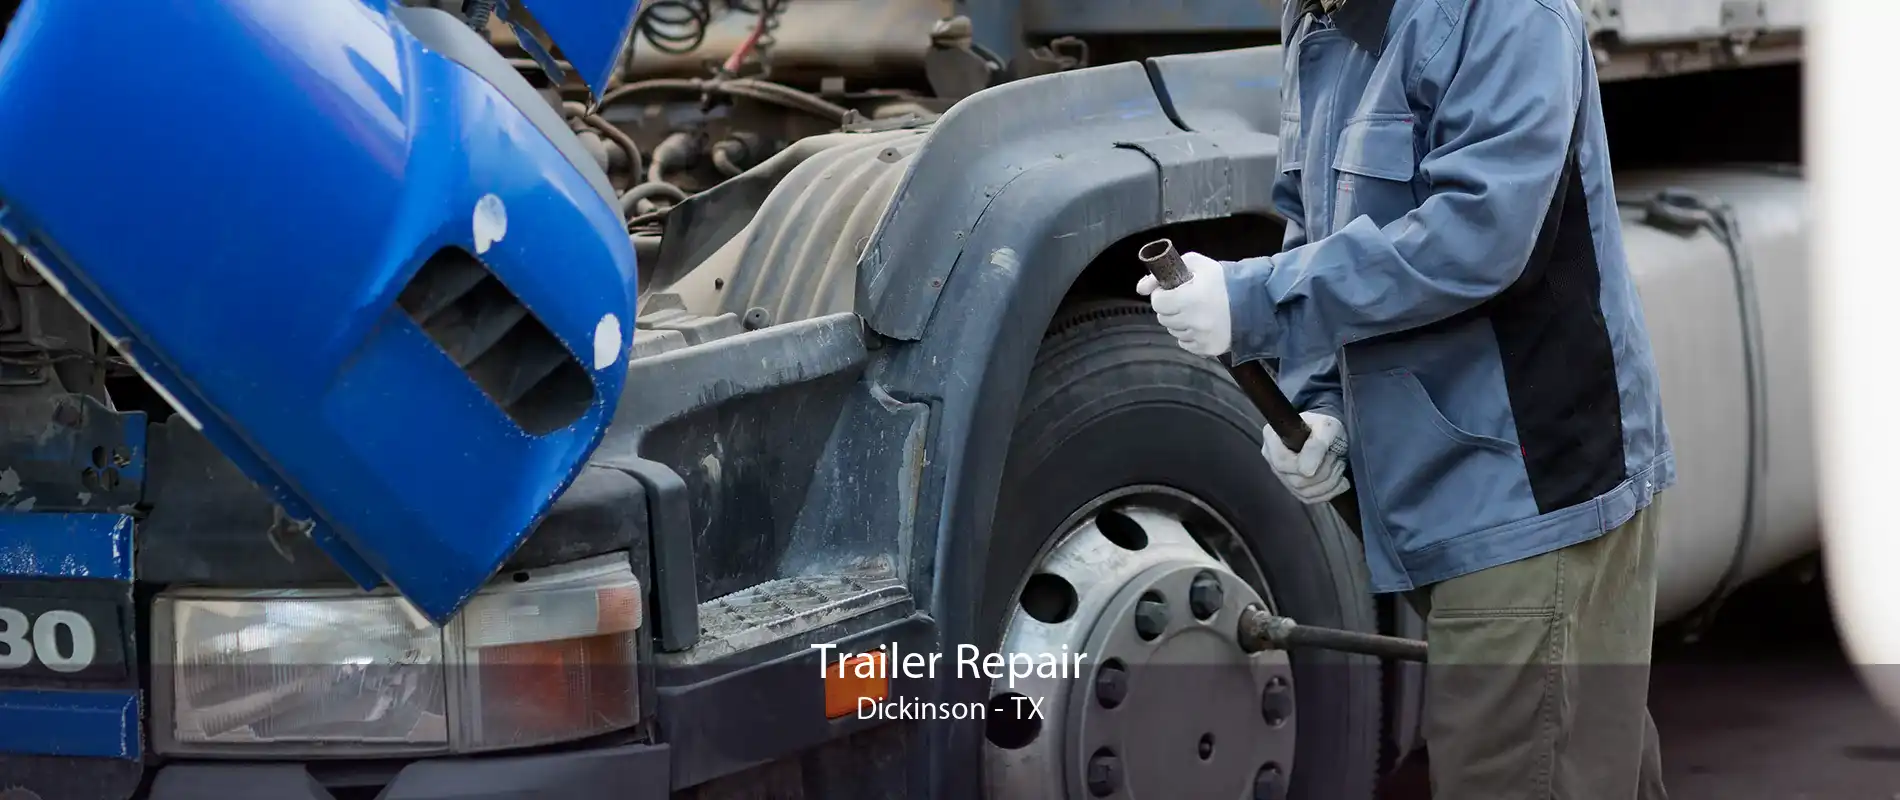 Trailer Repair Dickinson - TX